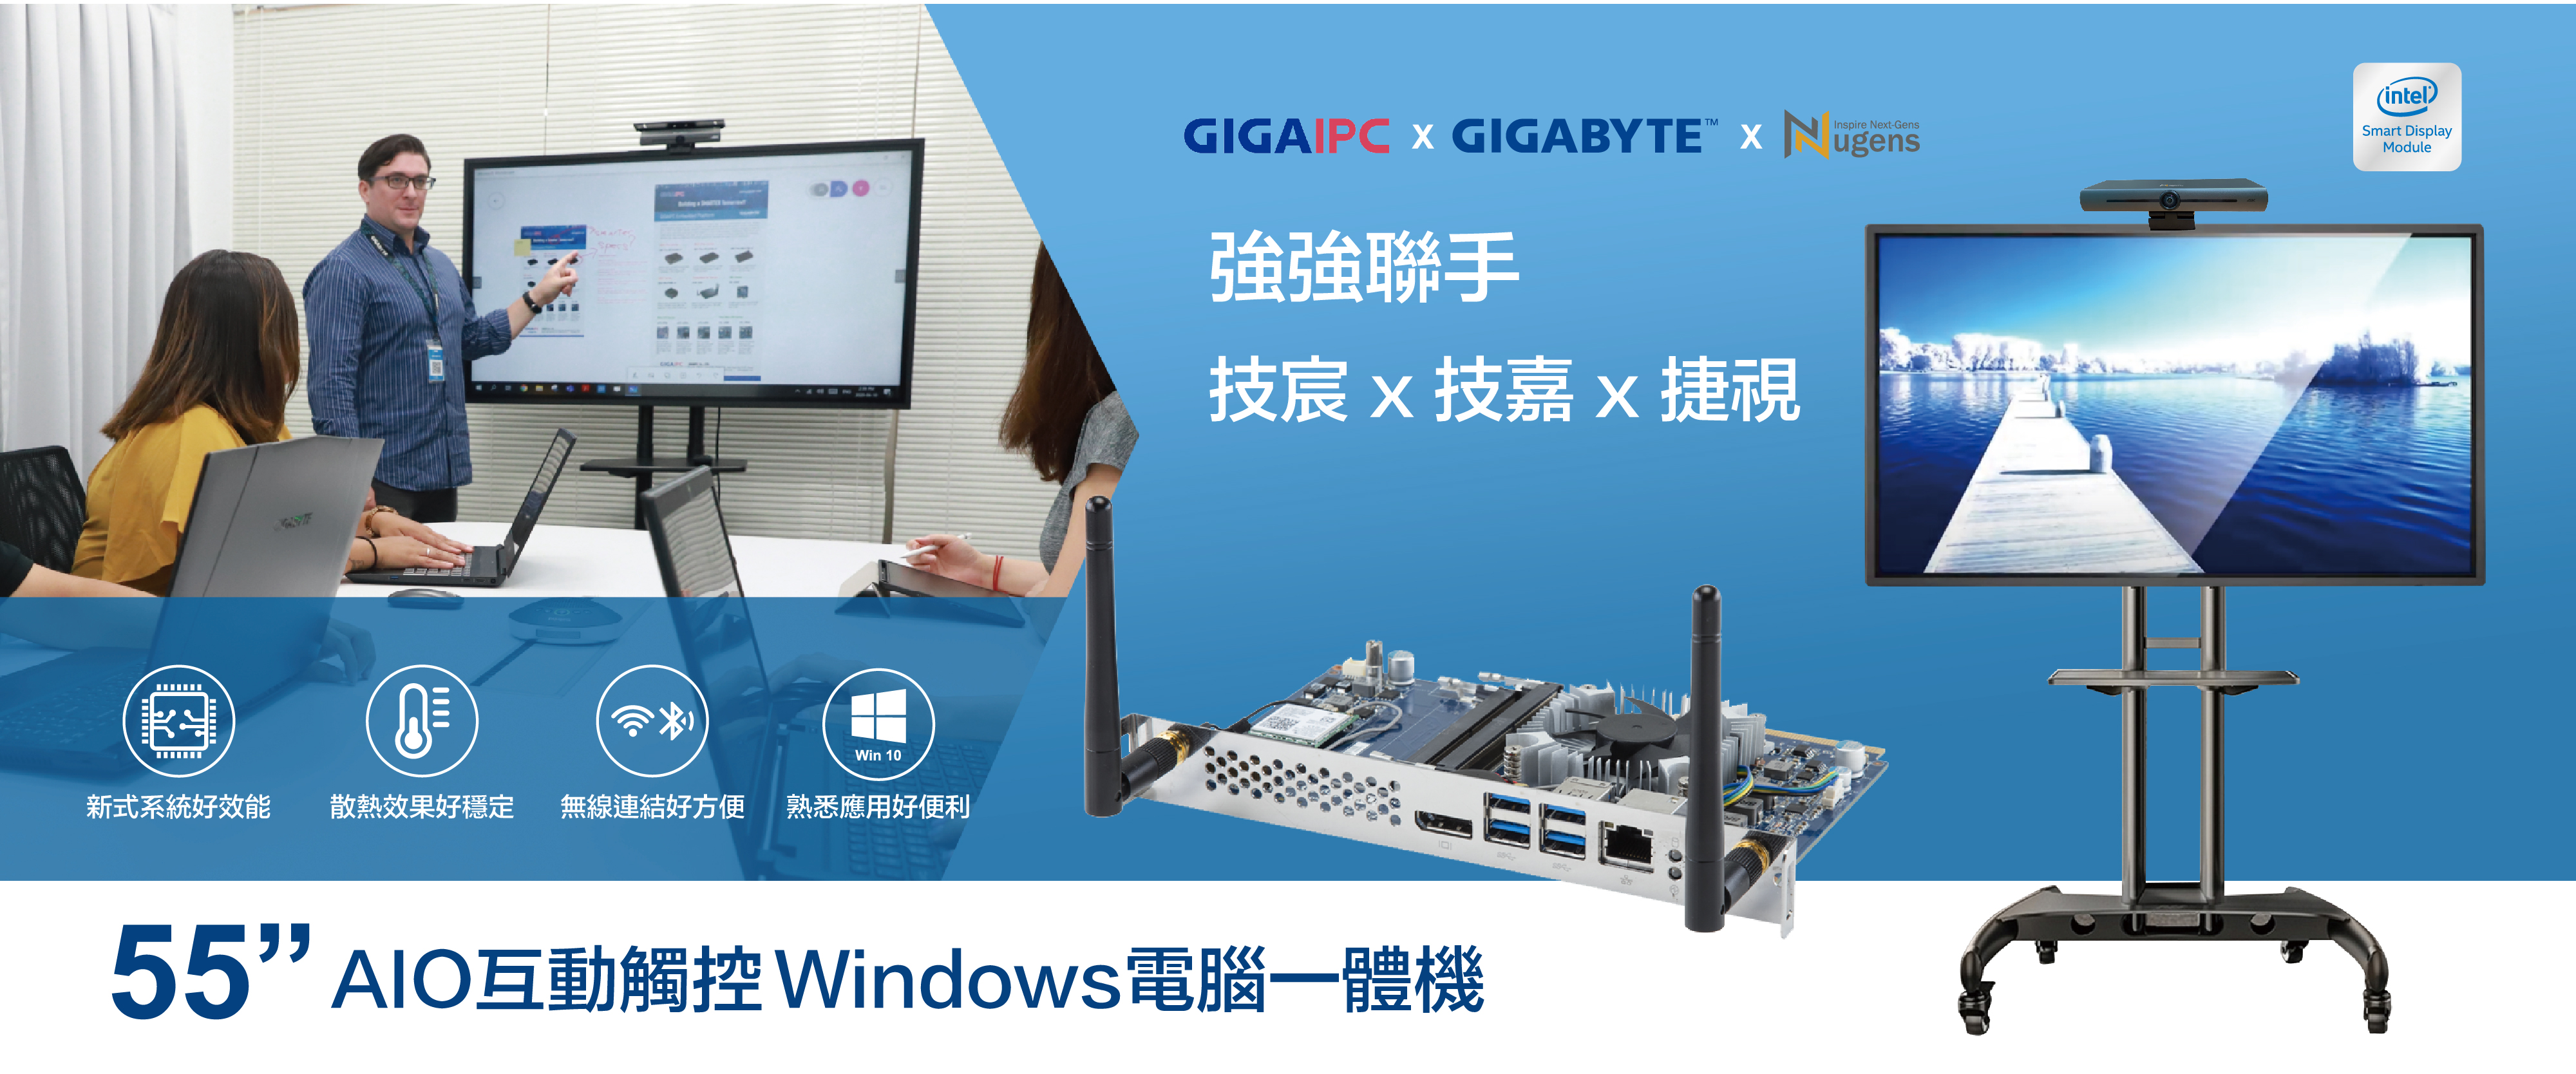 Gigabyte AIO互動觸控Windows電腦一體機